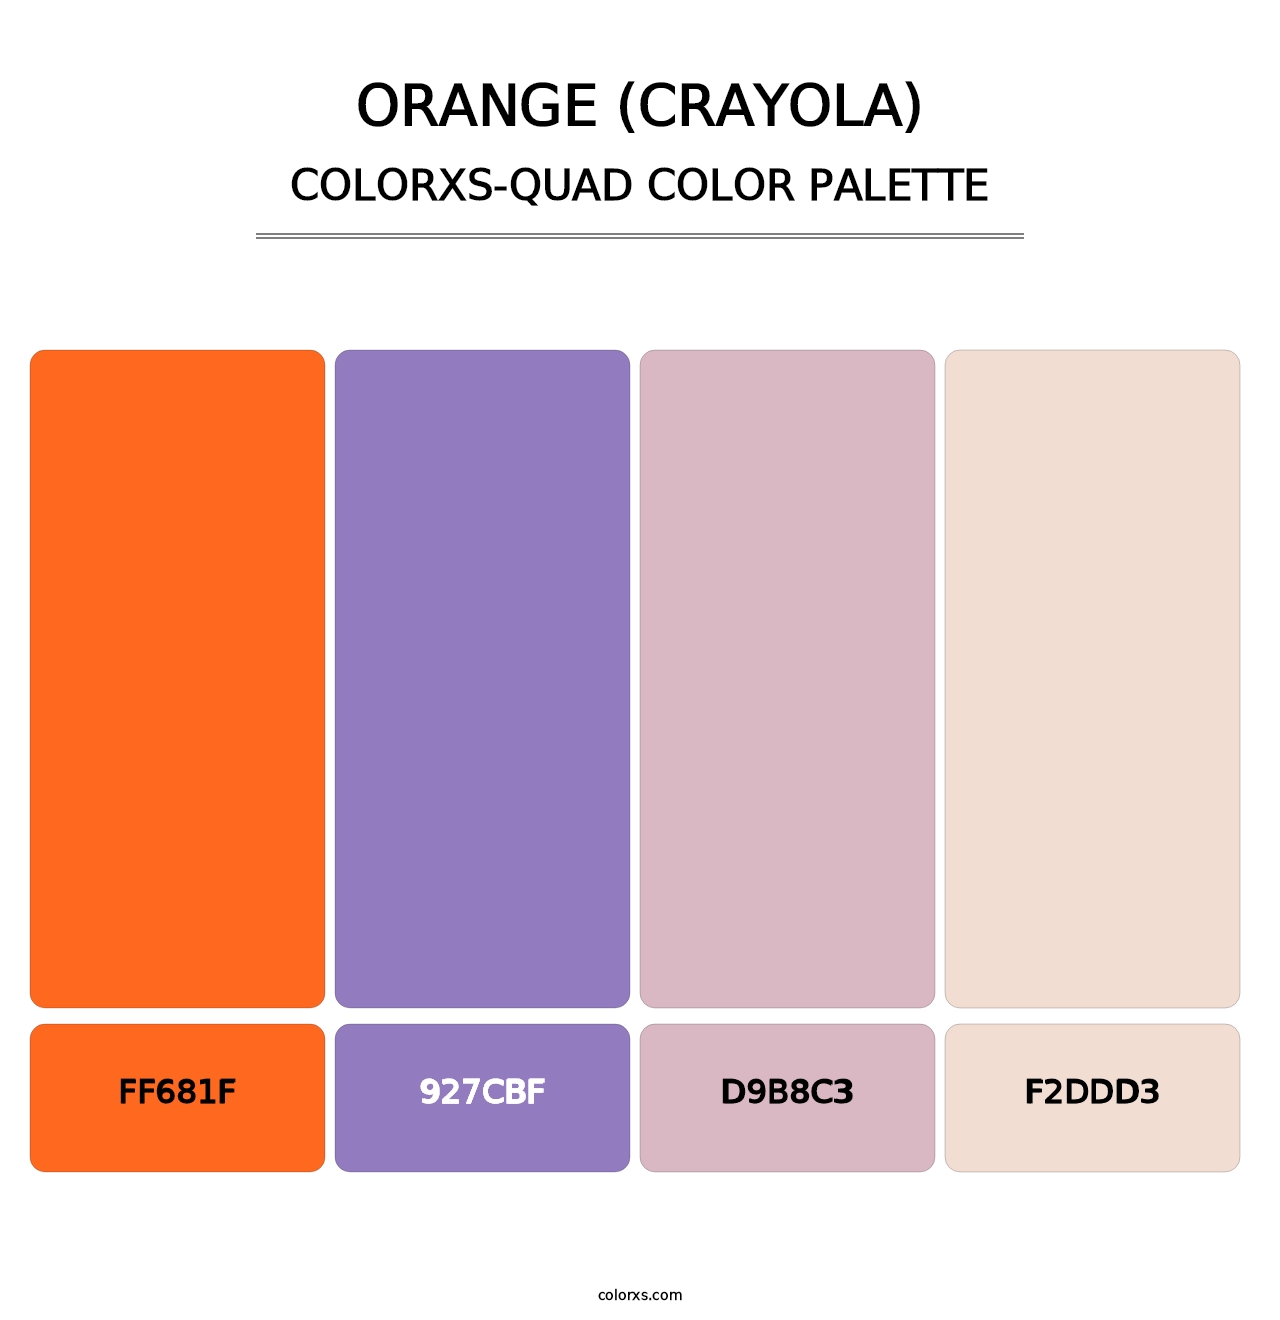 Orange (Crayola) - Colorxs Quad Palette